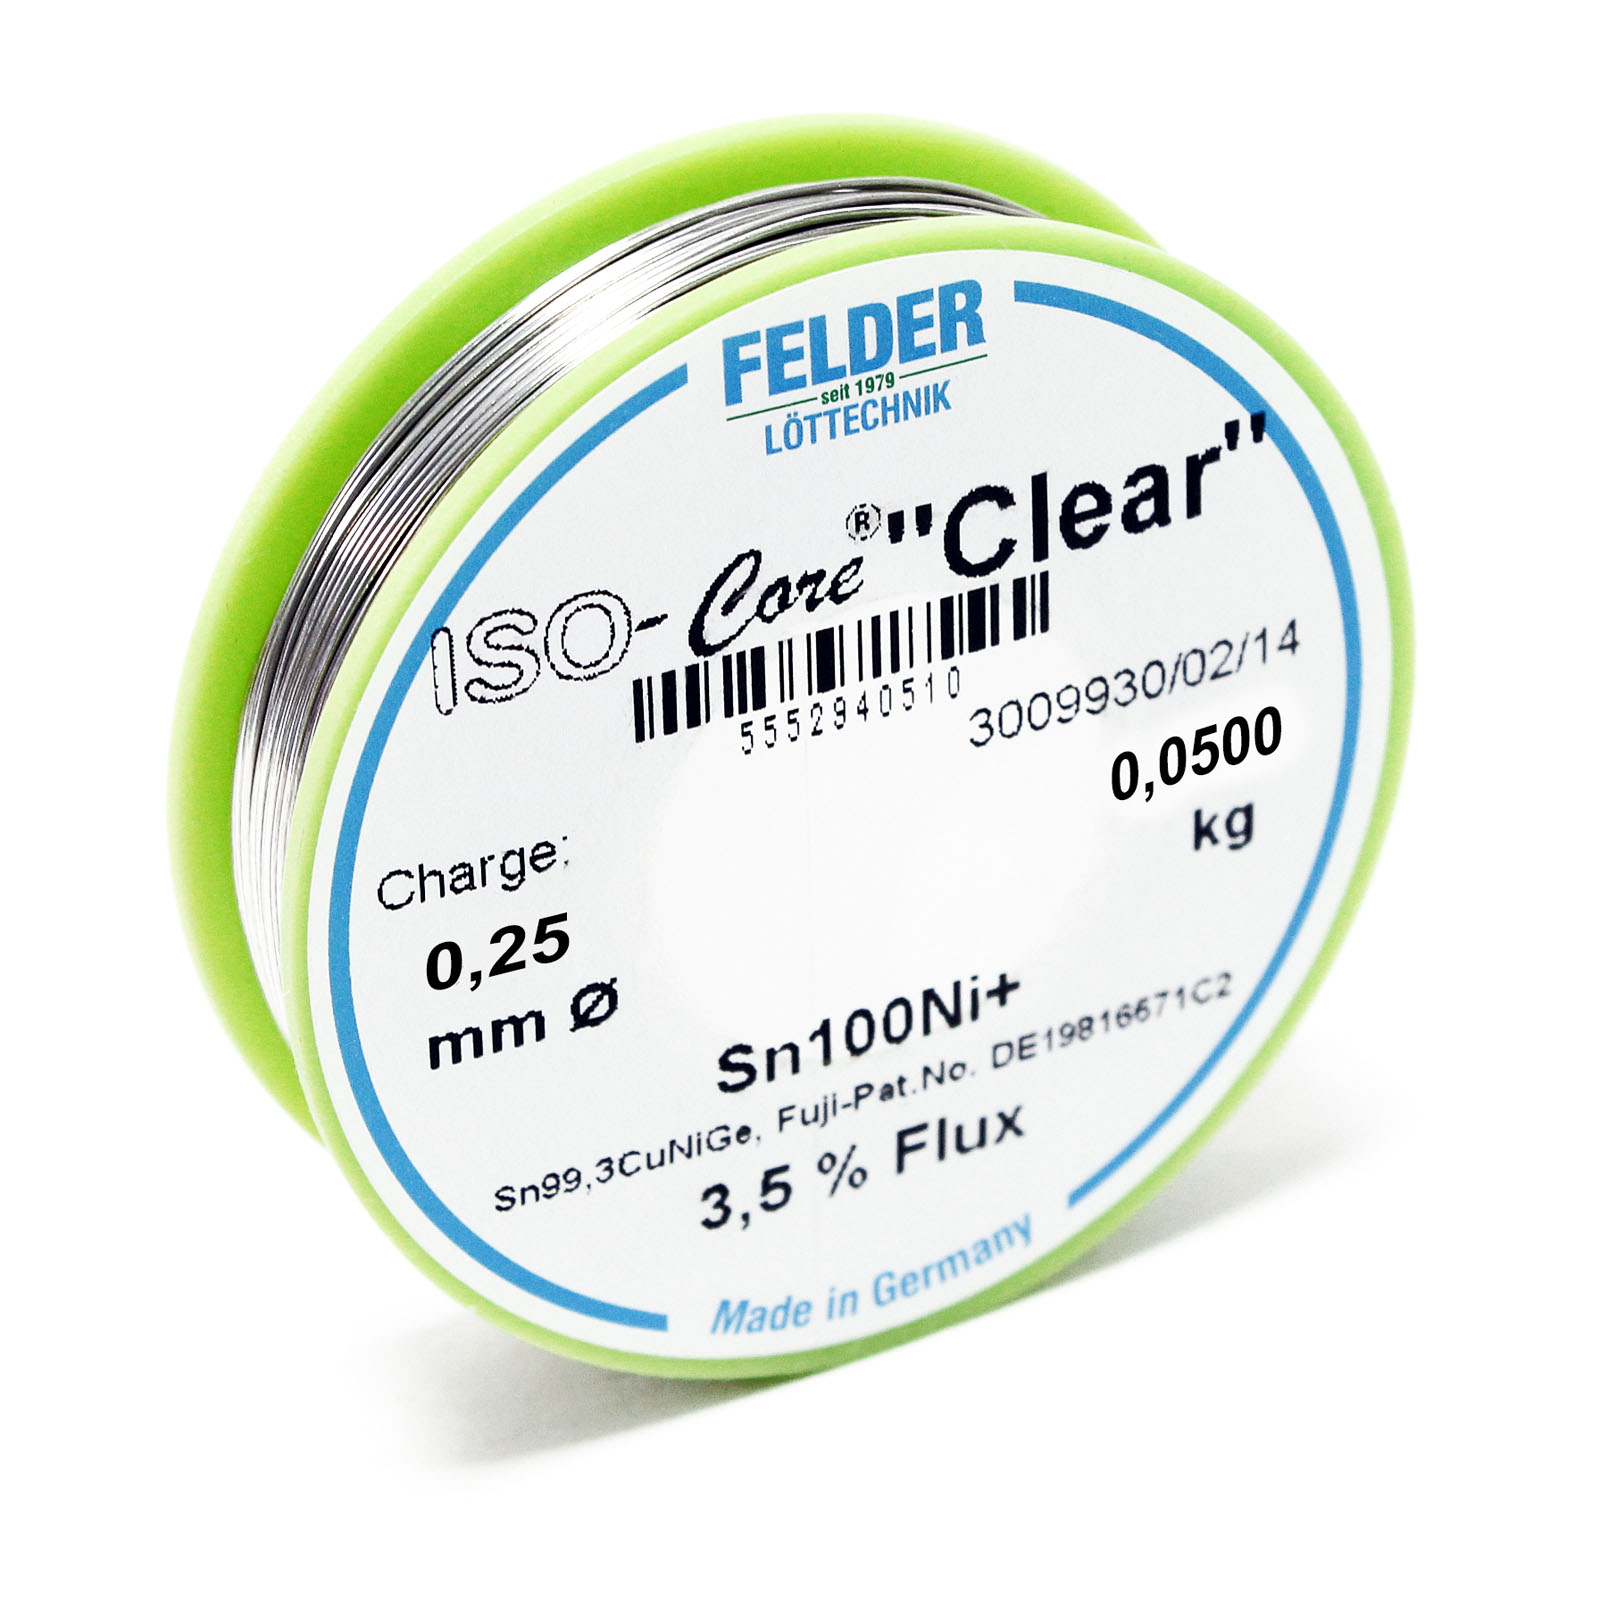 Felder Solder Wire ISO-Core "Clear"Sn100Ni+ Sn99,3CuNiGe 0.25mm 0.05kg